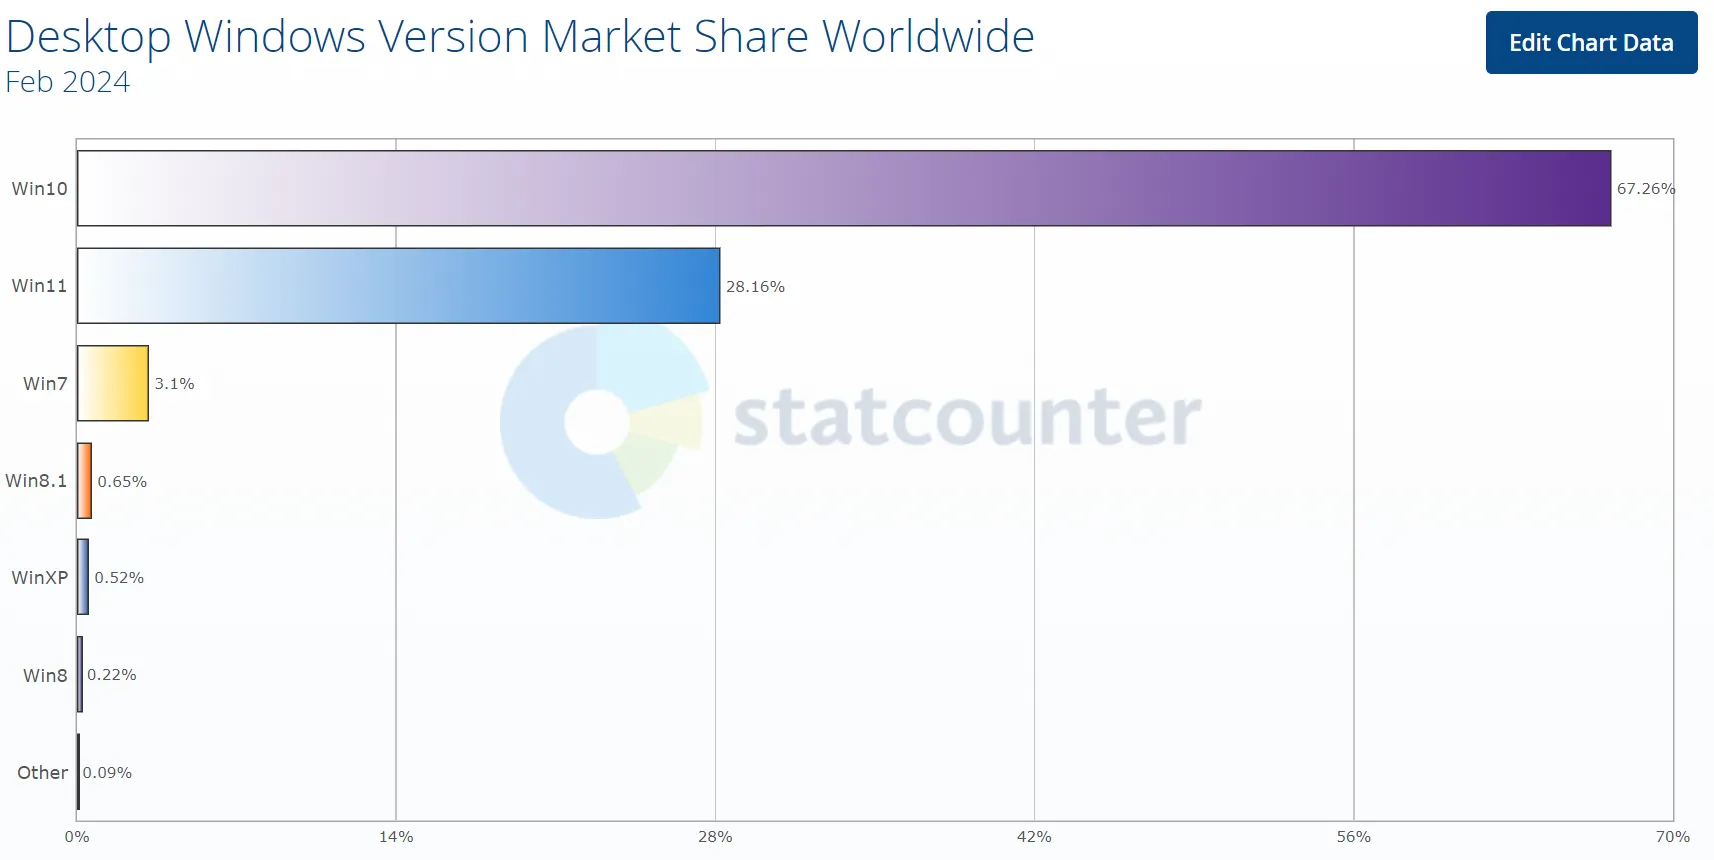 Part de marché de la version Windows de bureau dans le monde